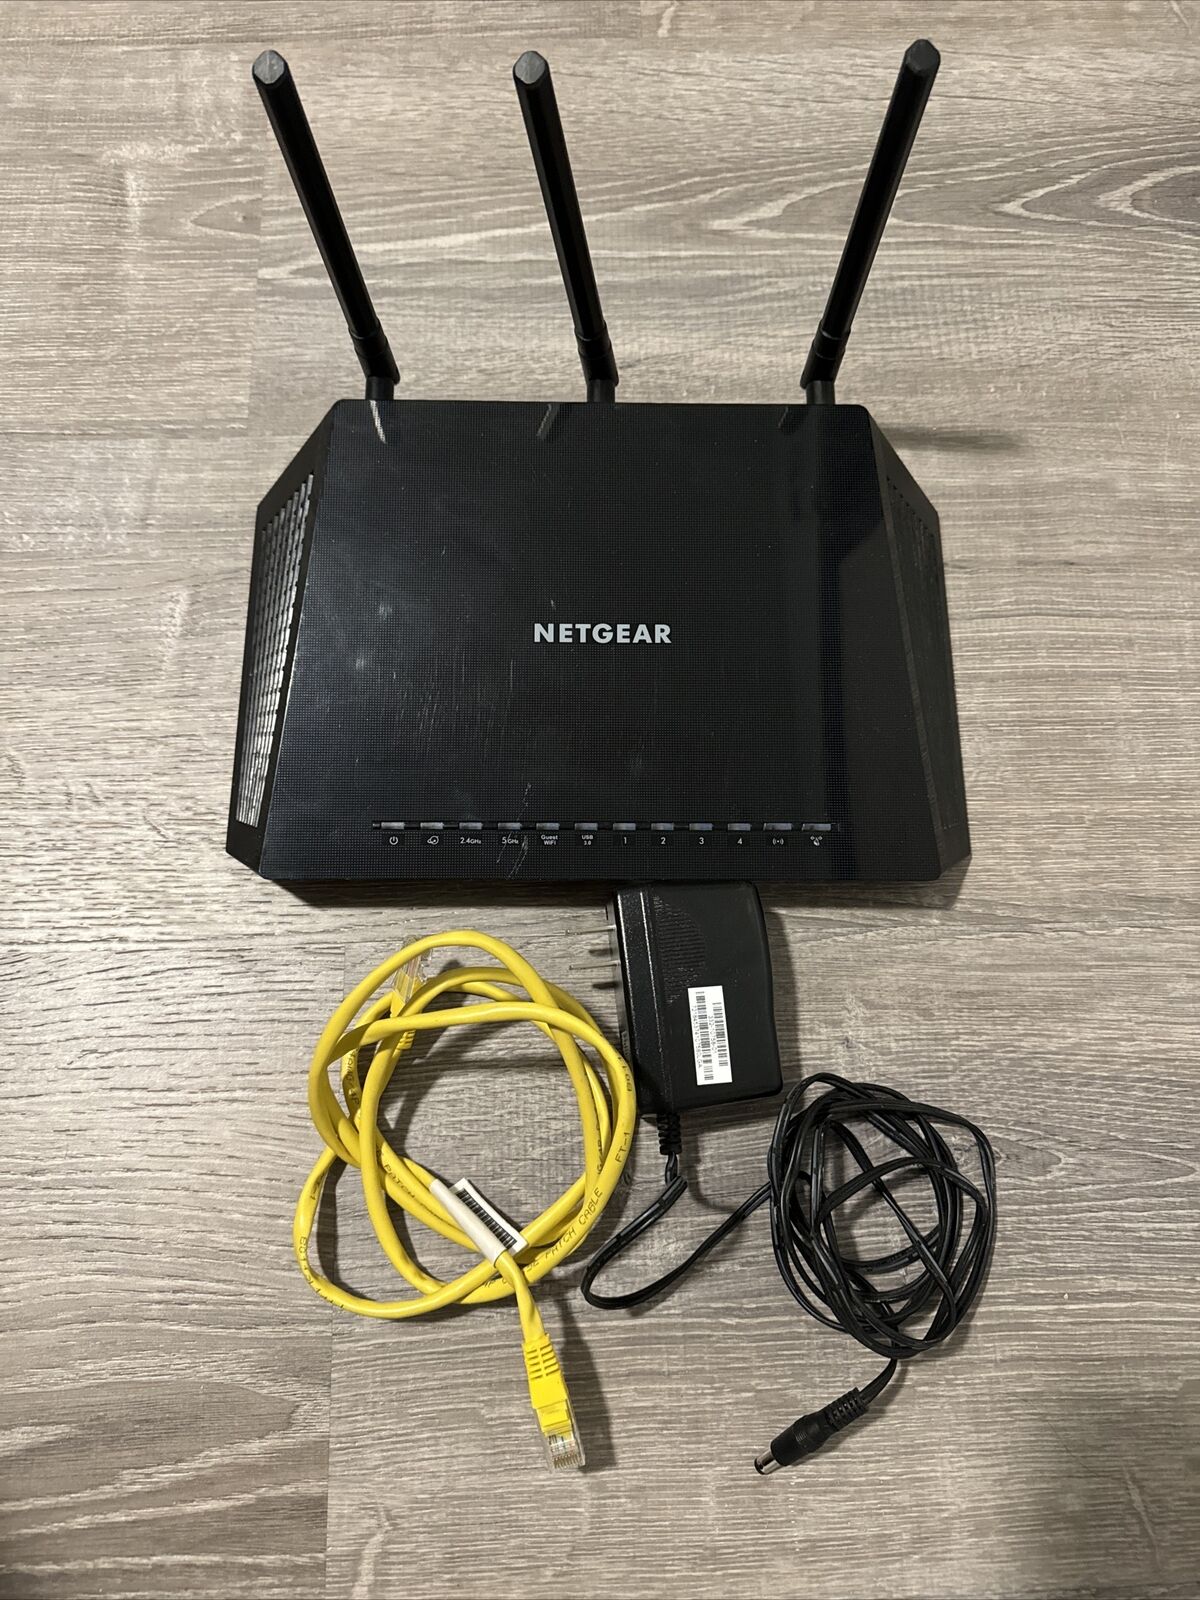 Netgear Nighthawk R6700v3 AC1750 Smart WiFi Router Dual Band 2.4GHz 5GHz